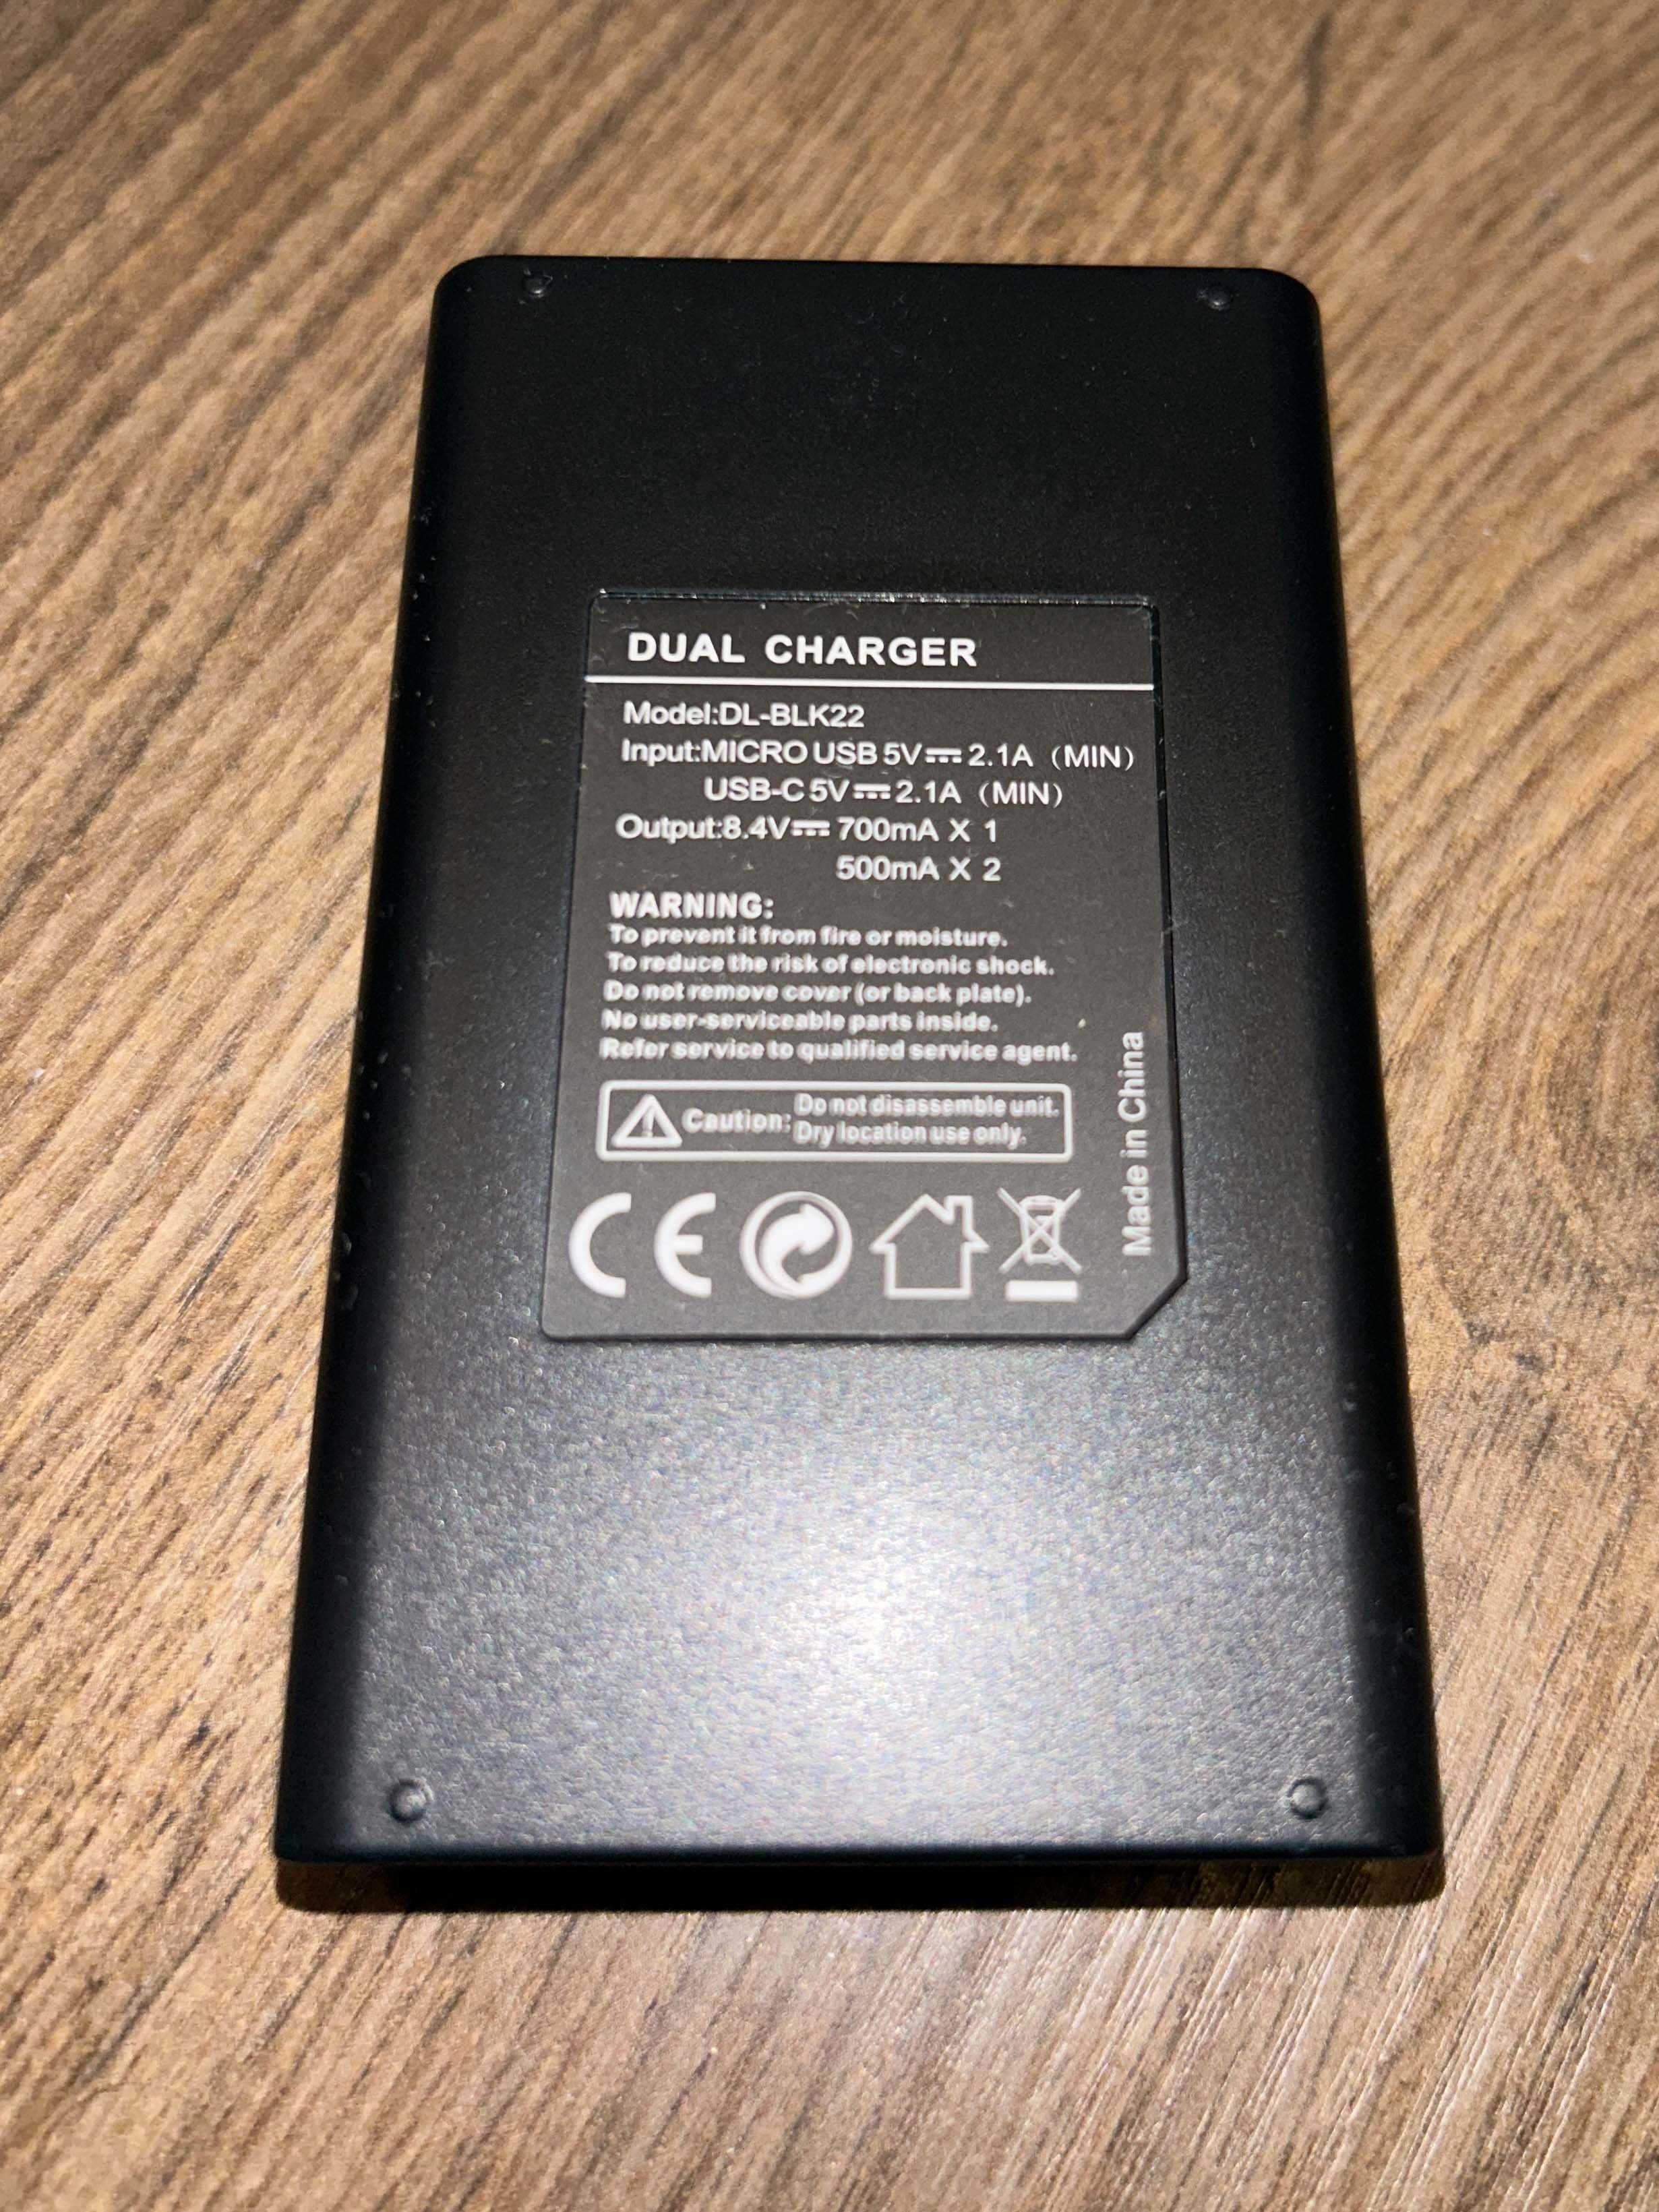 3 акумулятор dmw-blk22, 1 зарядний пристрій